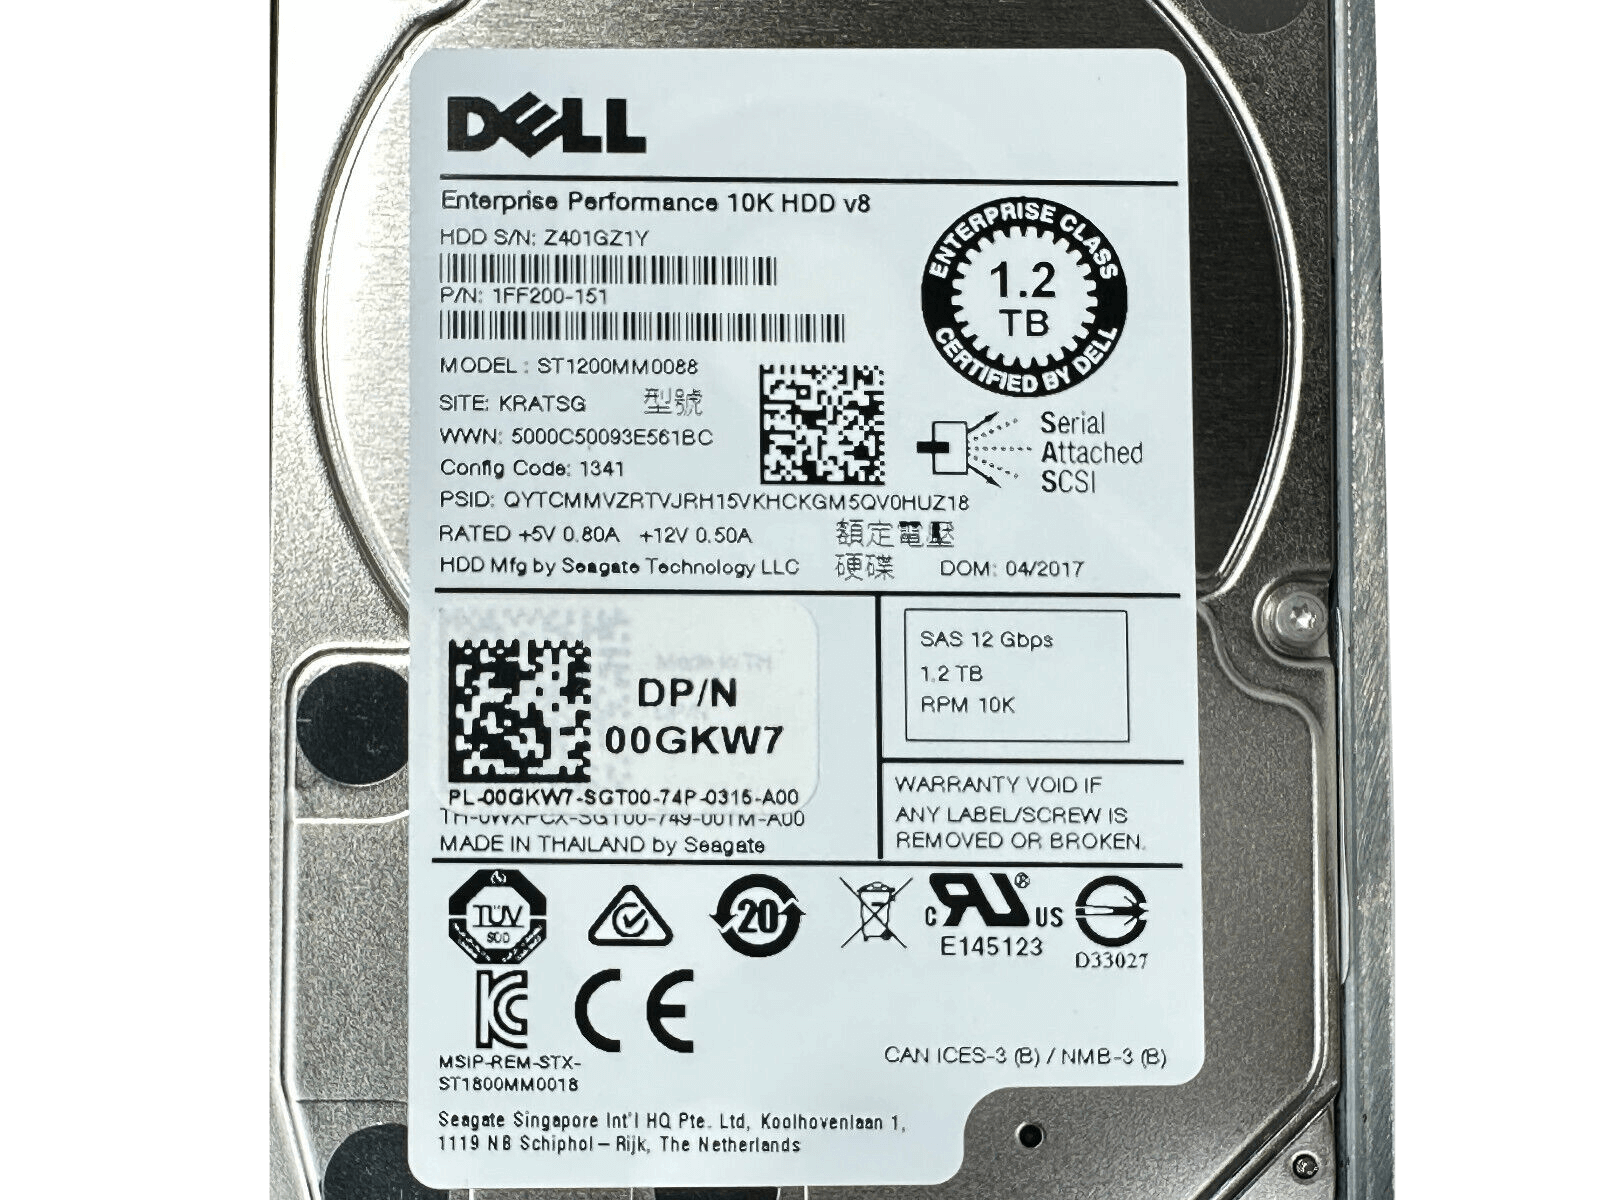 Dell R730xd 2x E5-2697V3 256GB 2x 480GB 4x 1.92TB SSD 12x 1.2TB HDD H730P 1100W.